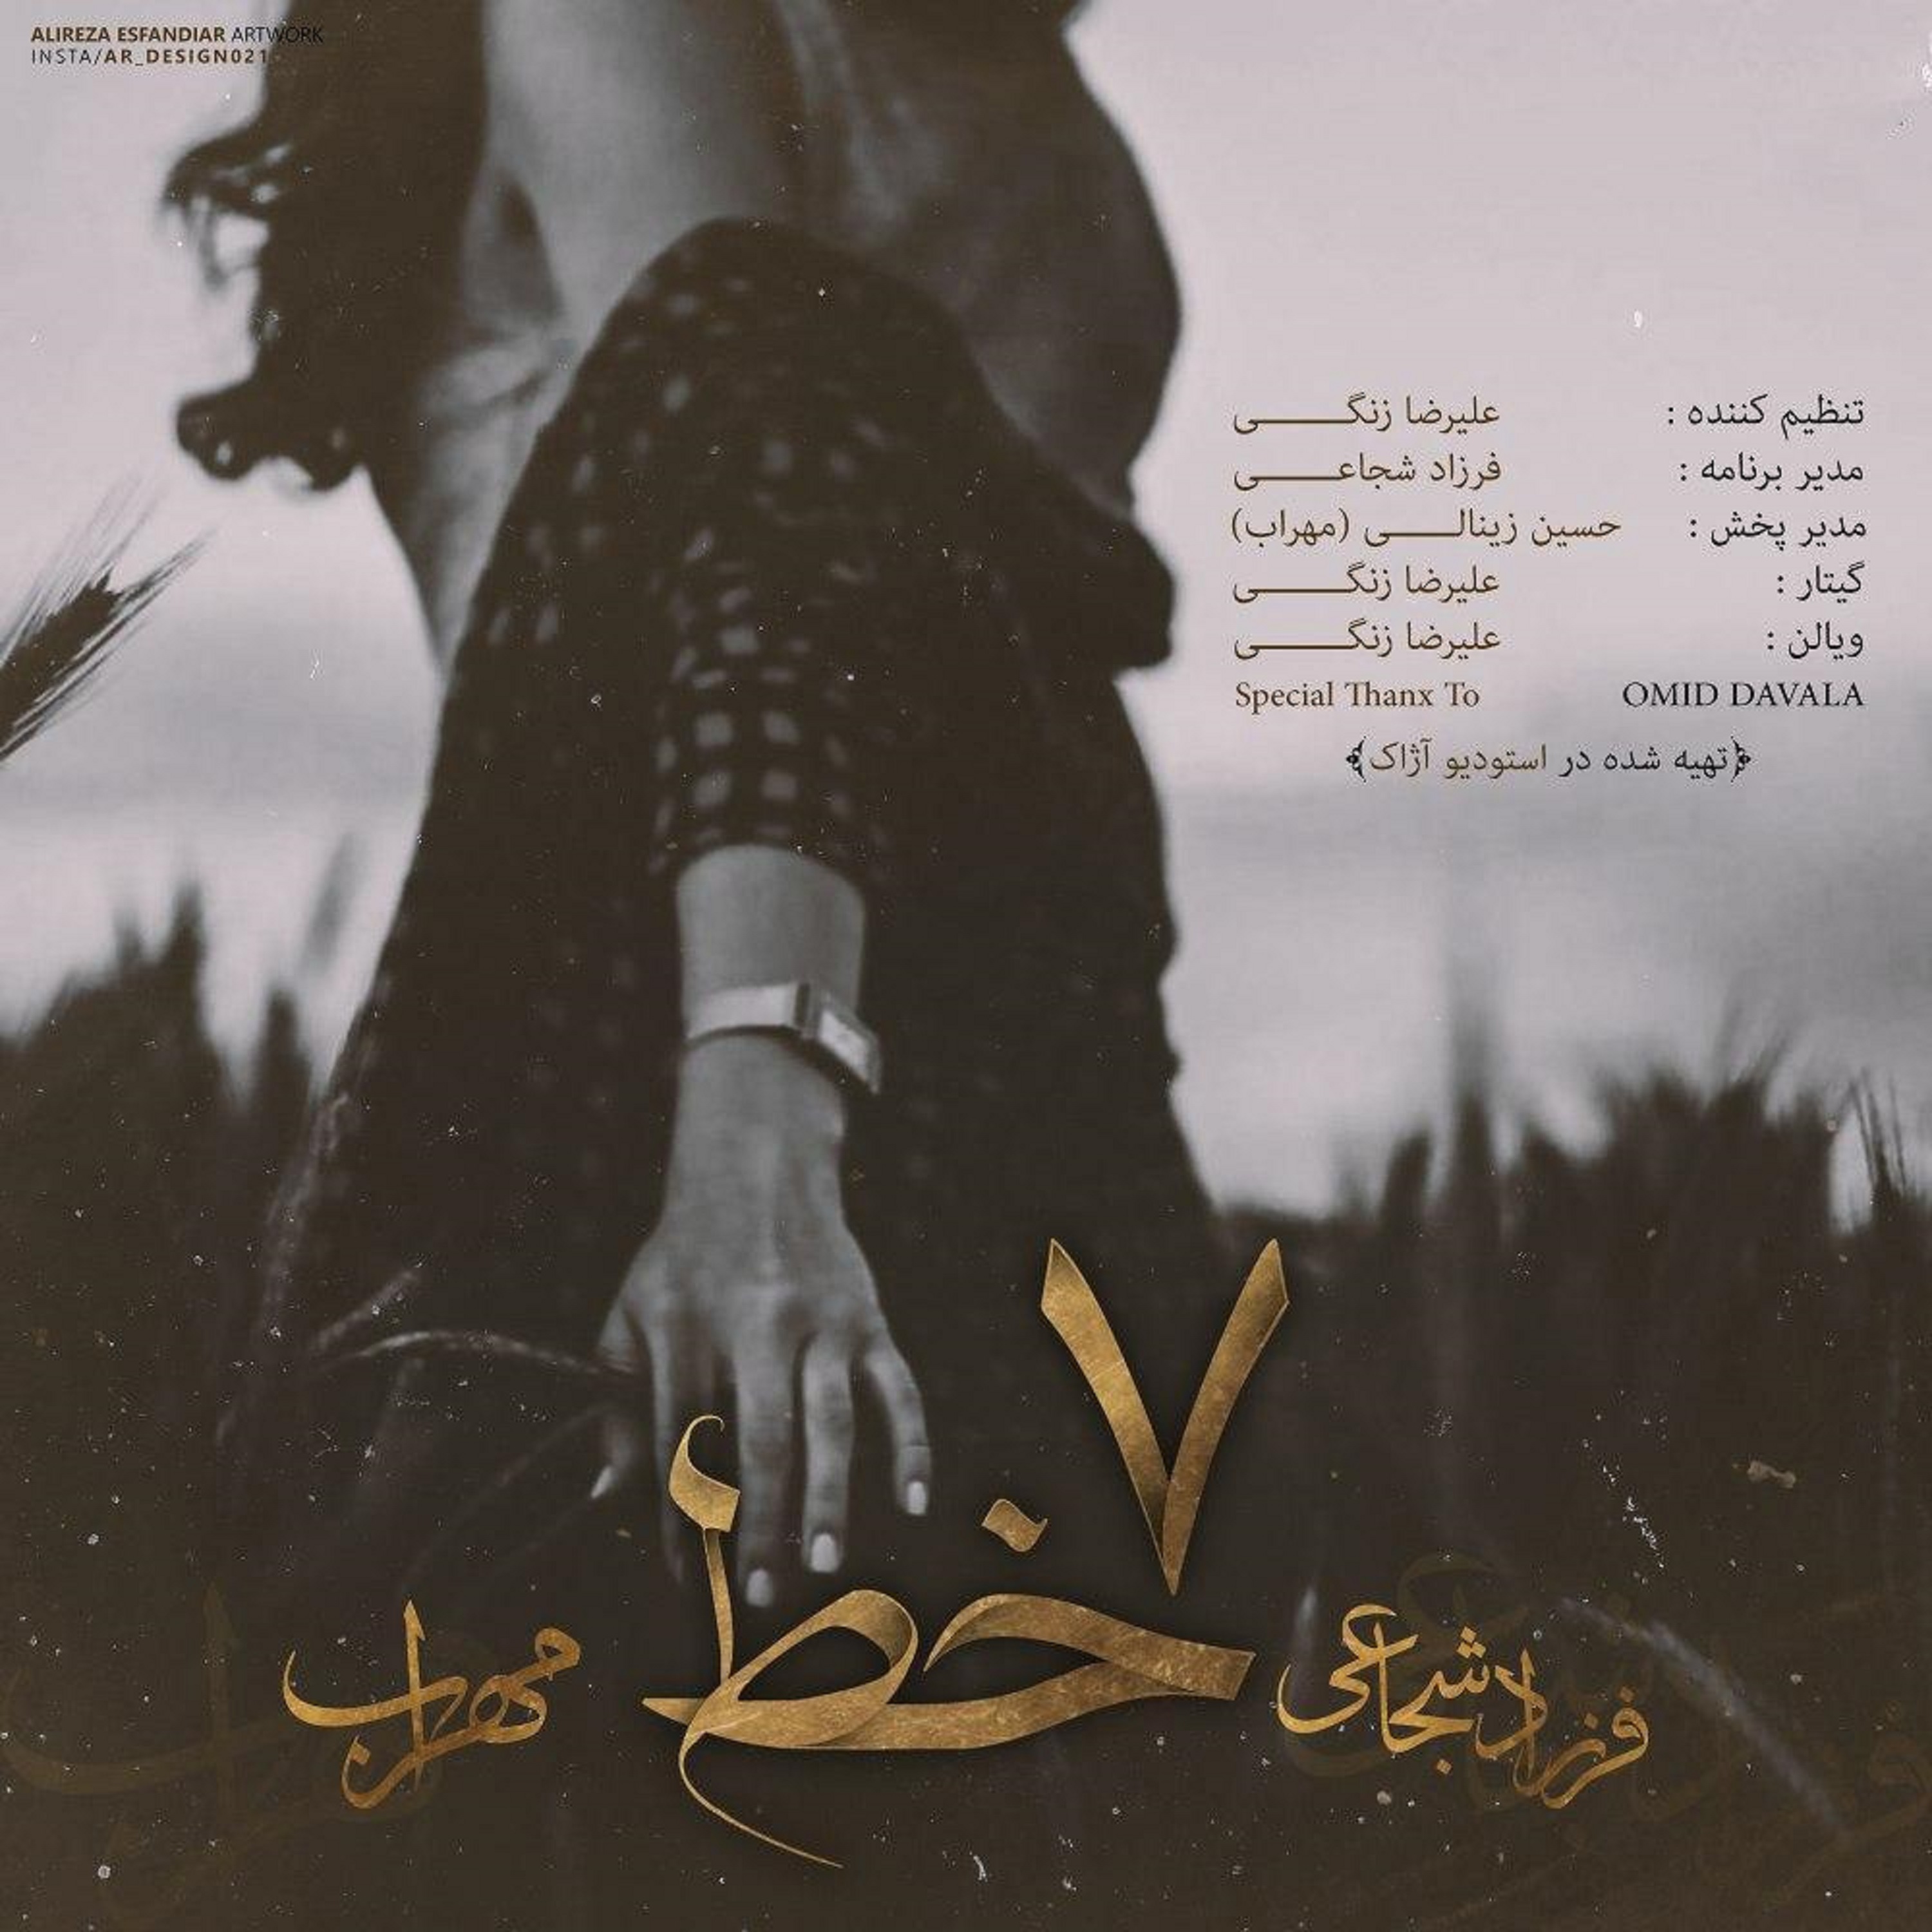  دانلود آهنگ جدید مهراب و فرزاد شجاعی - هفت خط | Download New Music By Mehrab - 7 Khat (feat. Farzad Shojaei)